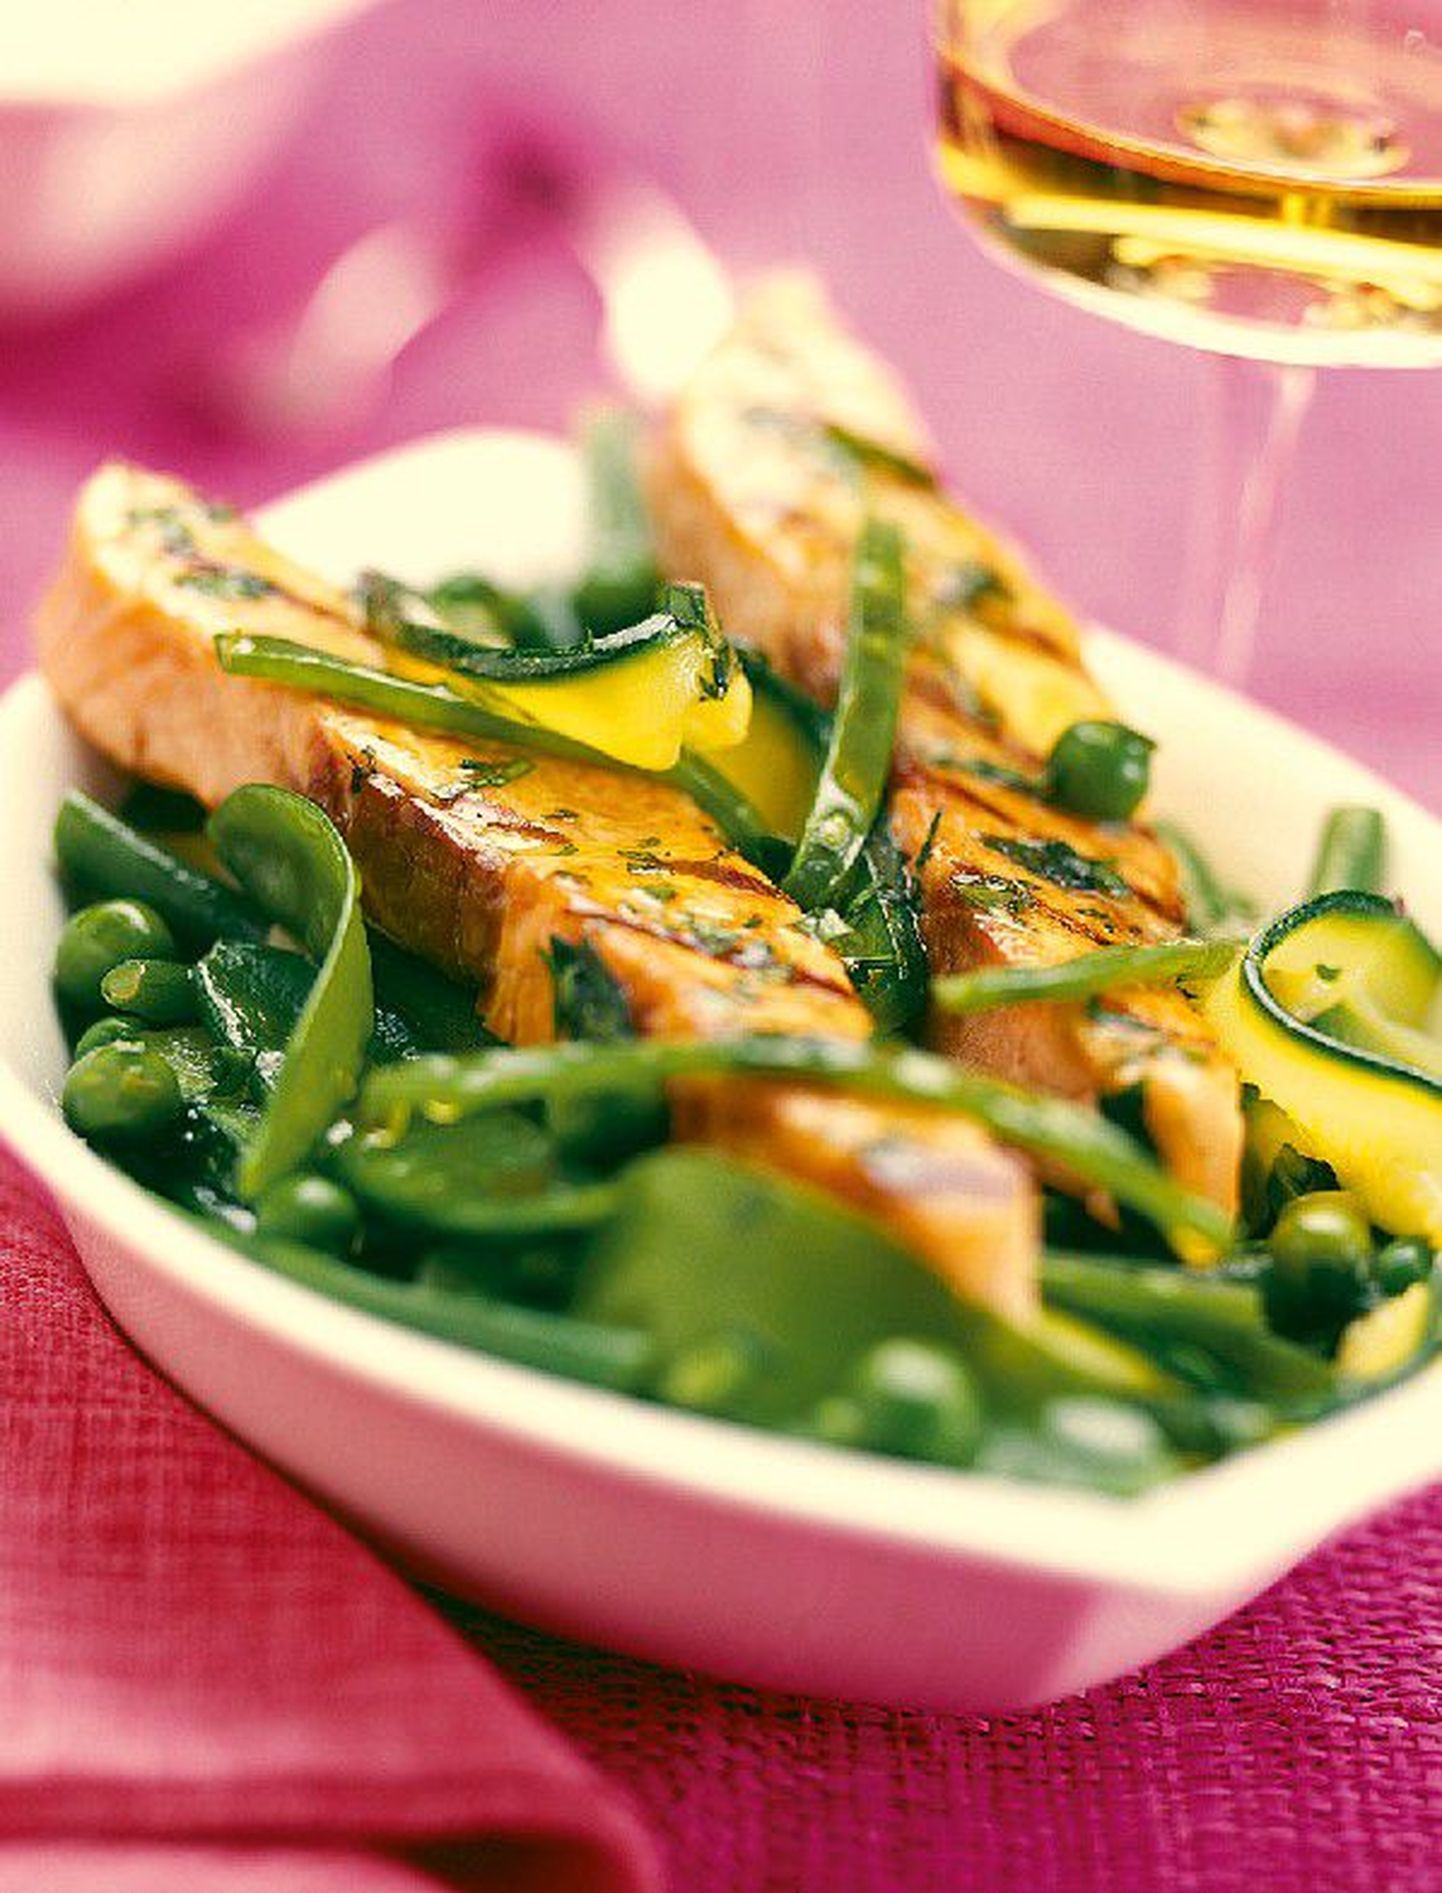 Lõhe ja köögiviljad: kala koos köögiviljadega on üks paljudest tervisetoidu variantidest.